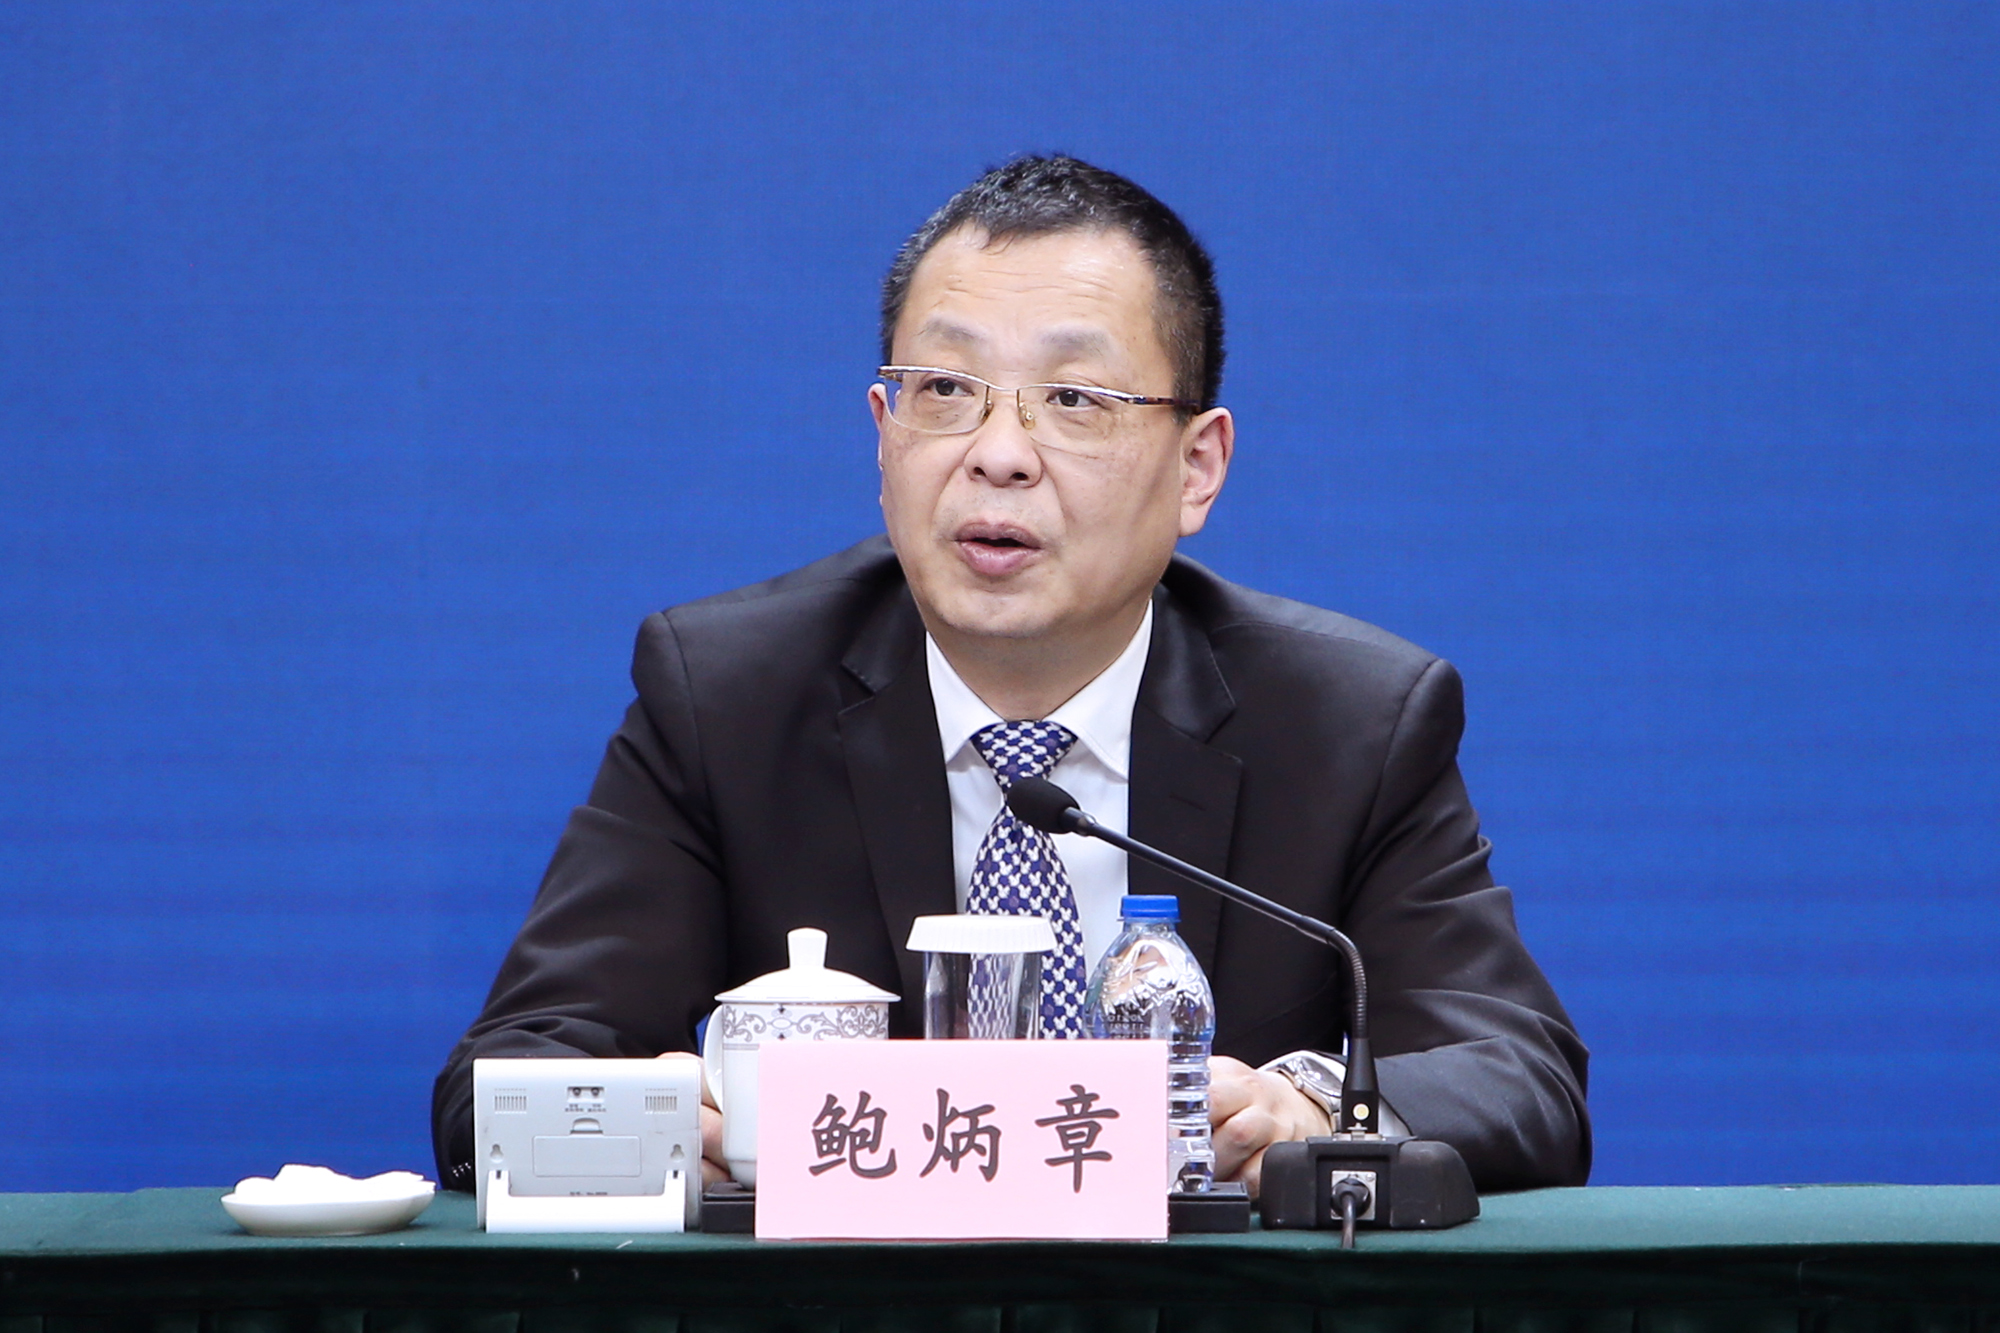 虹桥国际中央商务区管委会党组书记、常务副主任鲍炳章出席发布会并讲话。 (2)